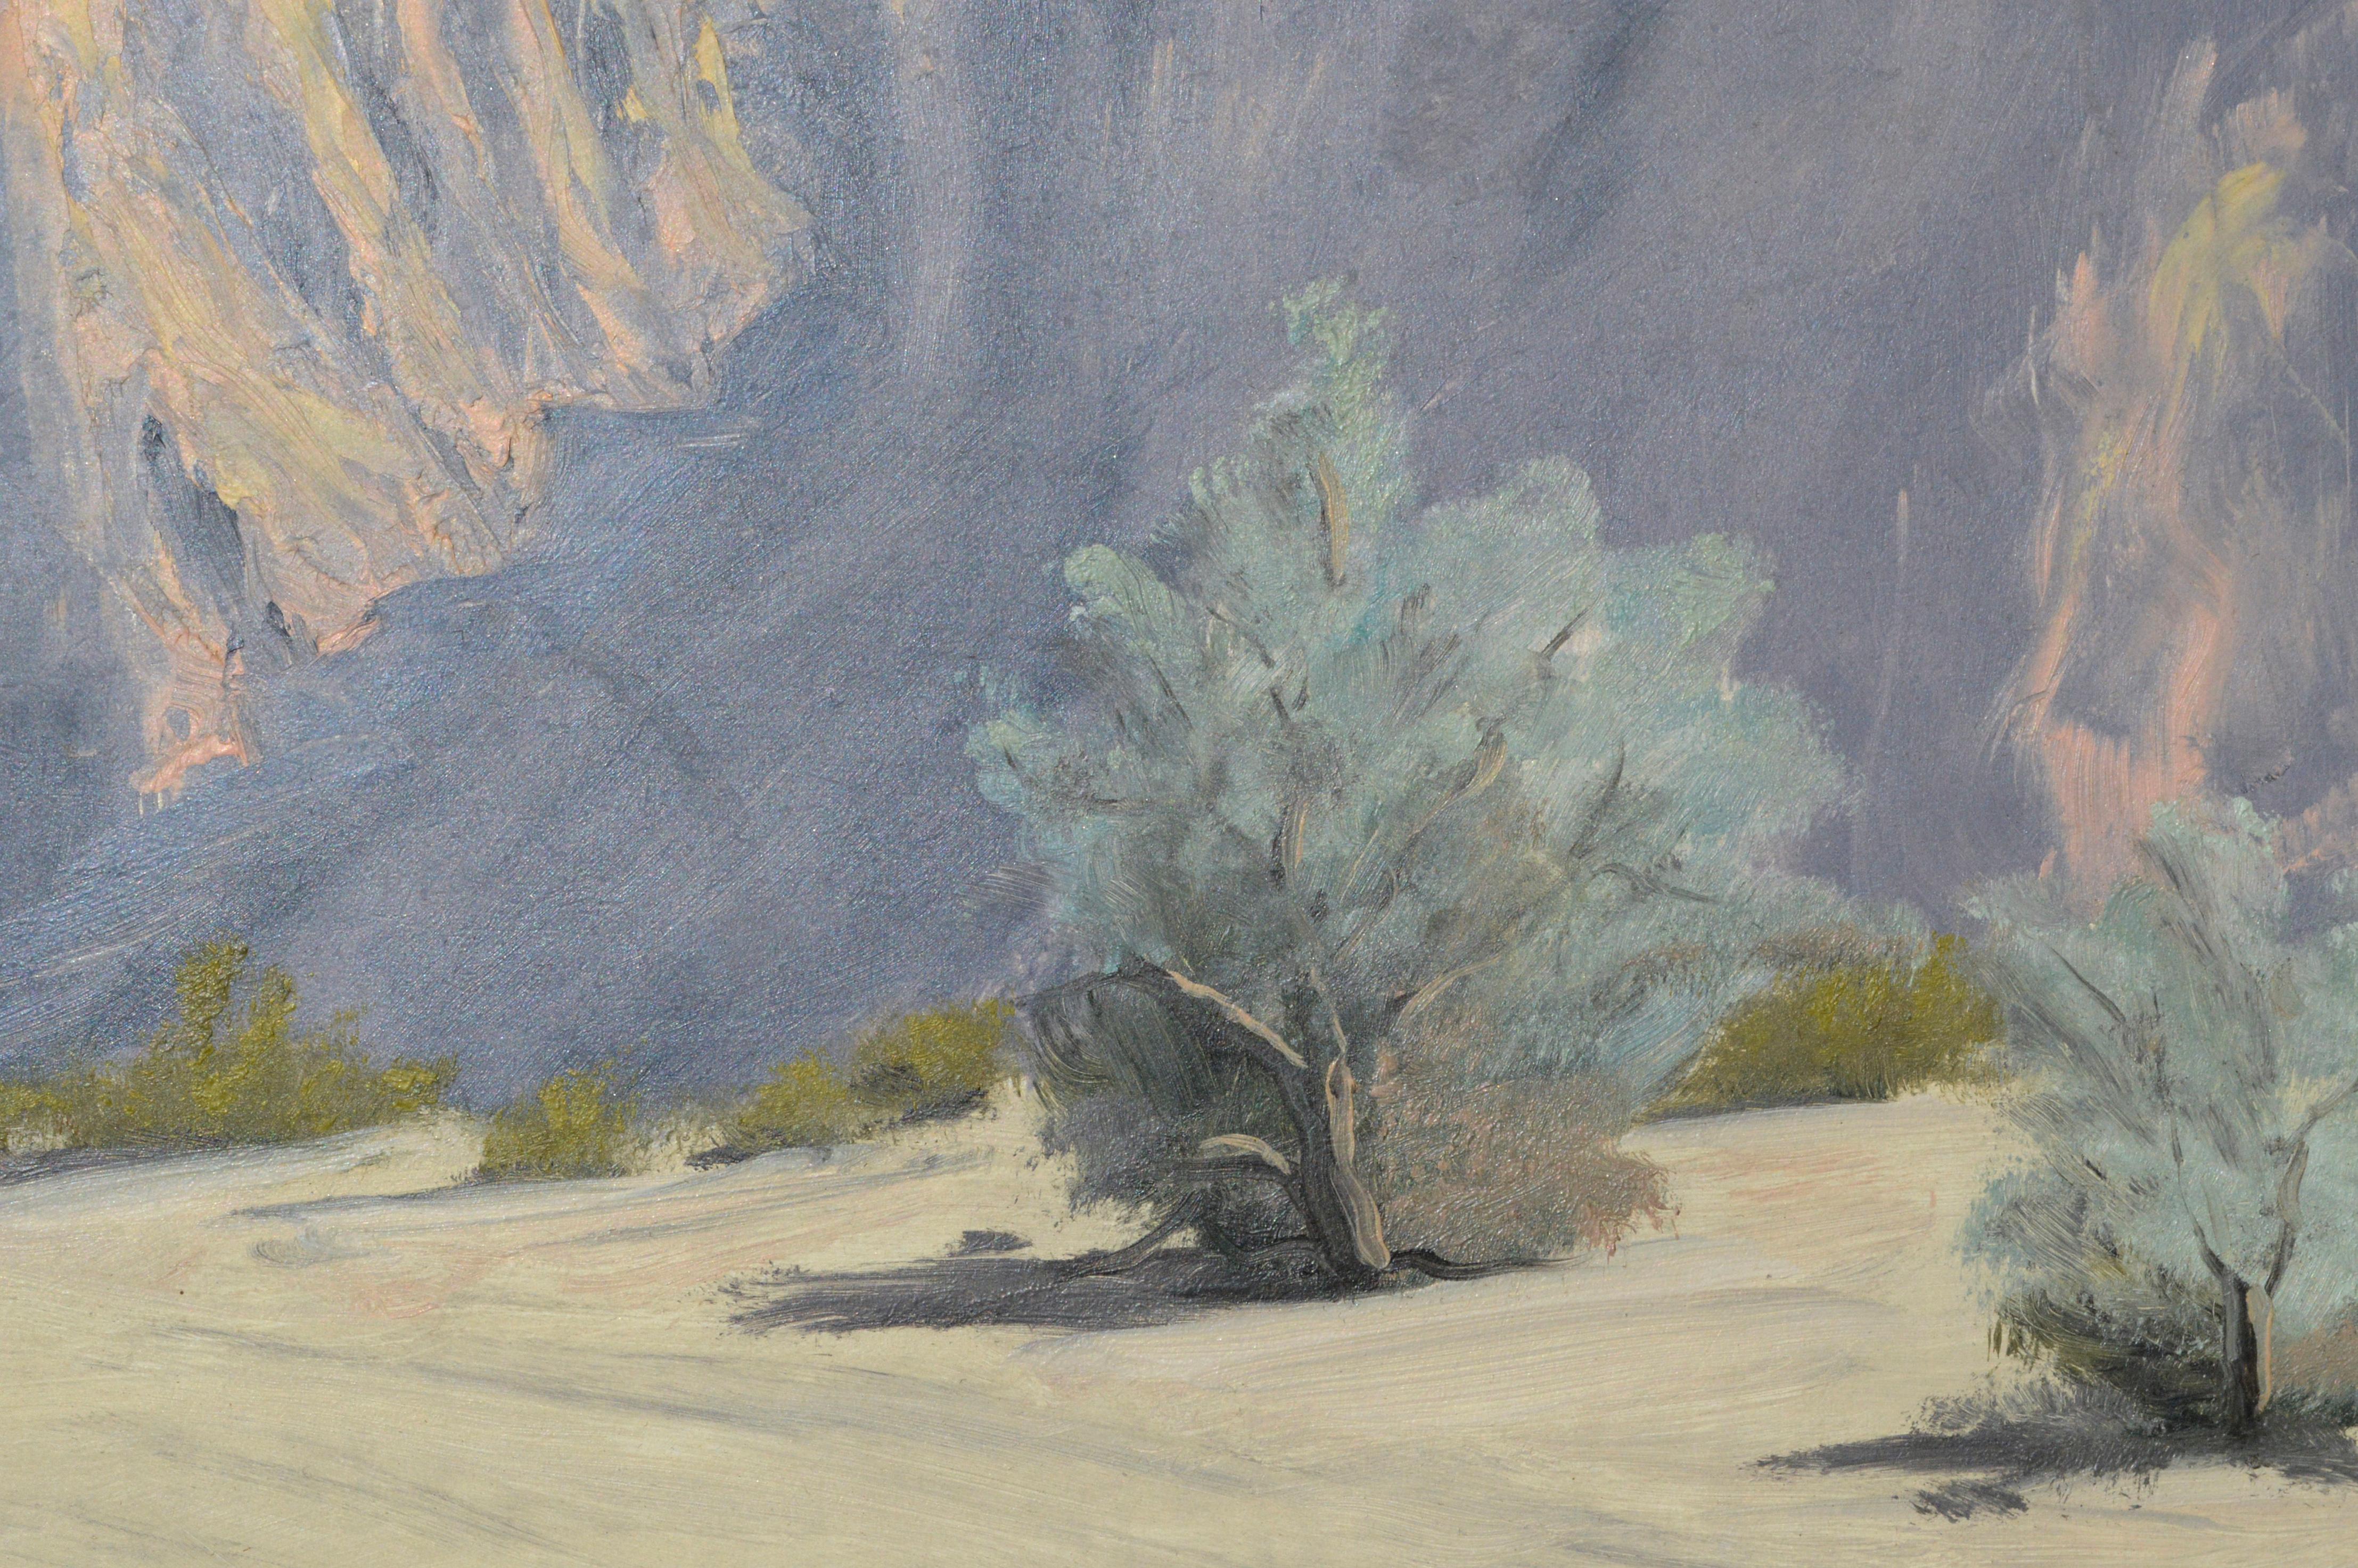 Palm Springs-Landschaft des frühen 20. Jahrhunderts, Berge und Wüste (Grau), Landscape Painting, von Beatrice Gildersleeve